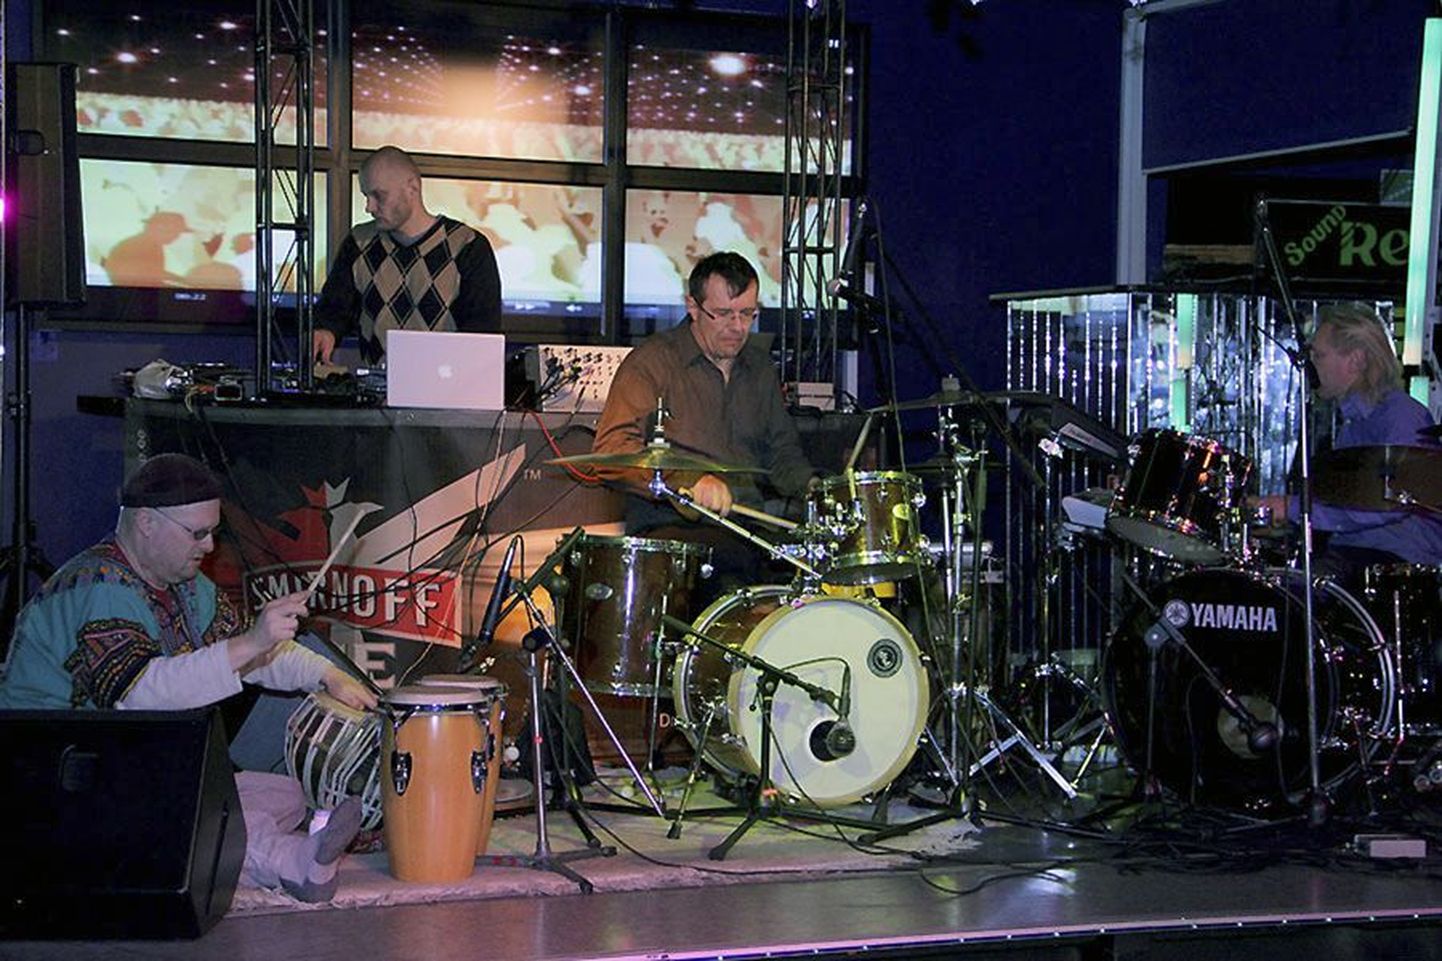 Viljandlastele aastatega hästi tuttavaks saanud Drum Prana pakub kõige suurema elamuse kontserdil nagu muusika ikka.